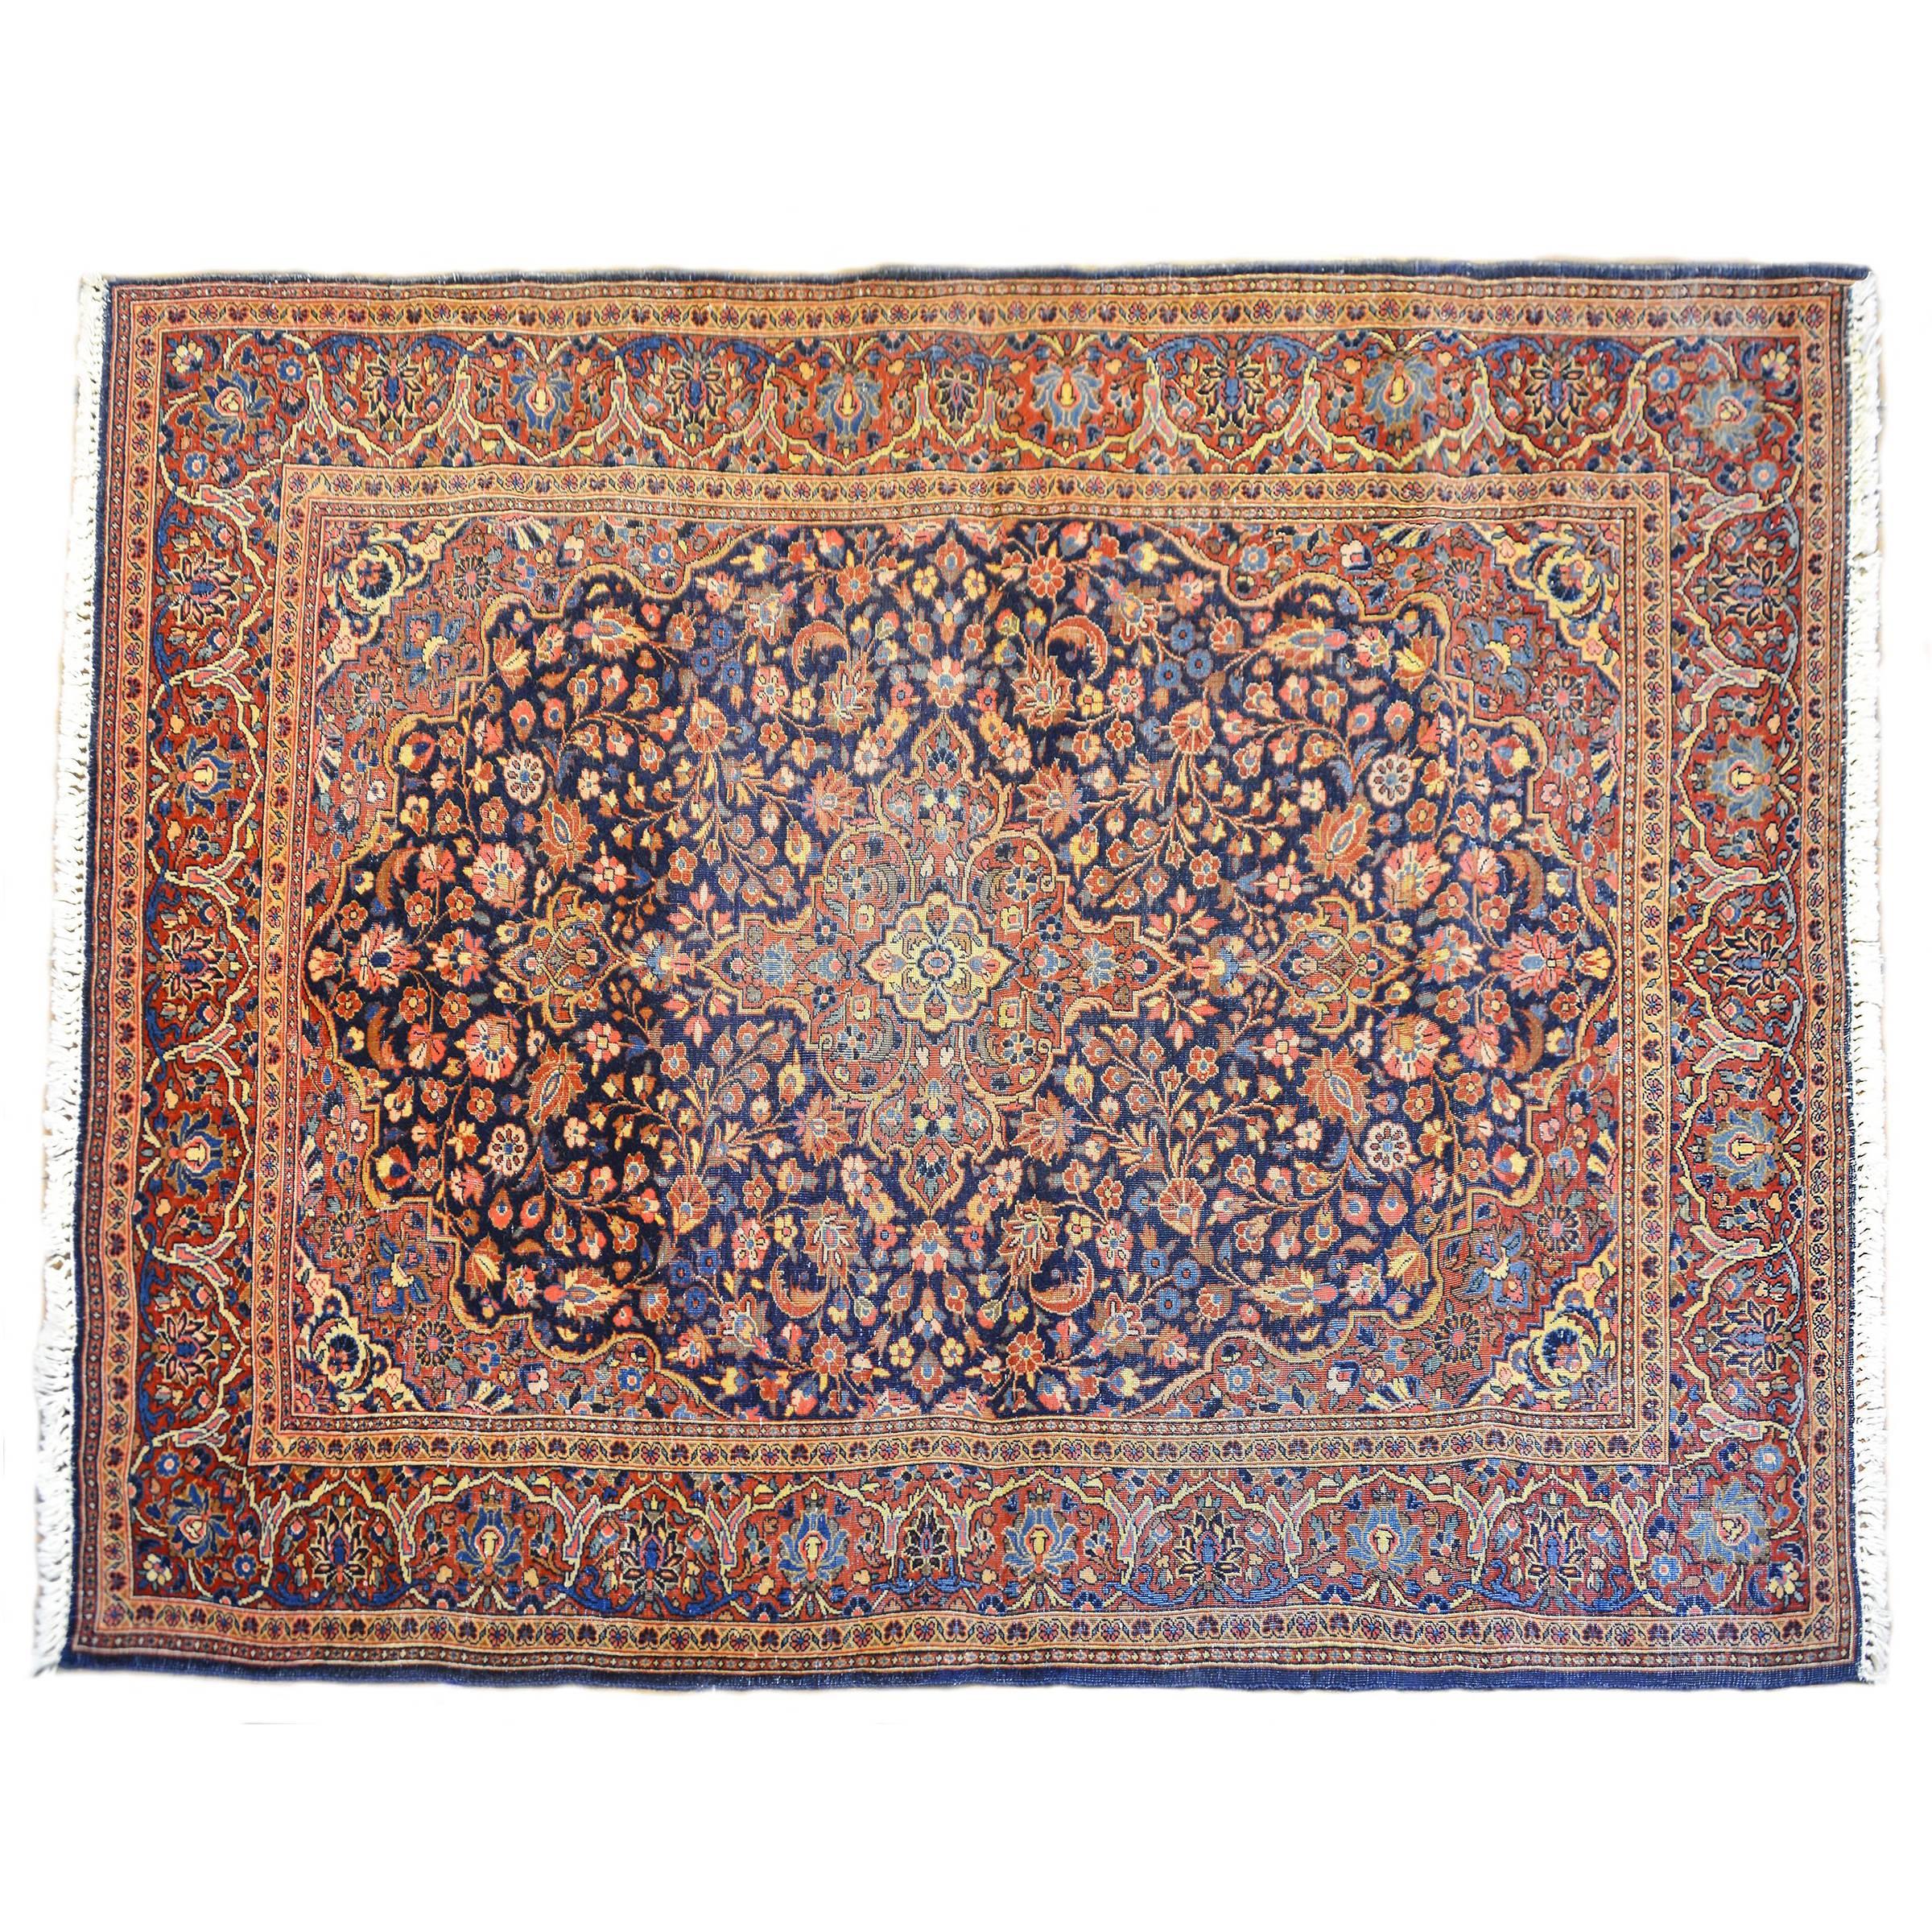 Unglaublicher Kashan-Teppich aus dem frühen 20. Jahrhundert